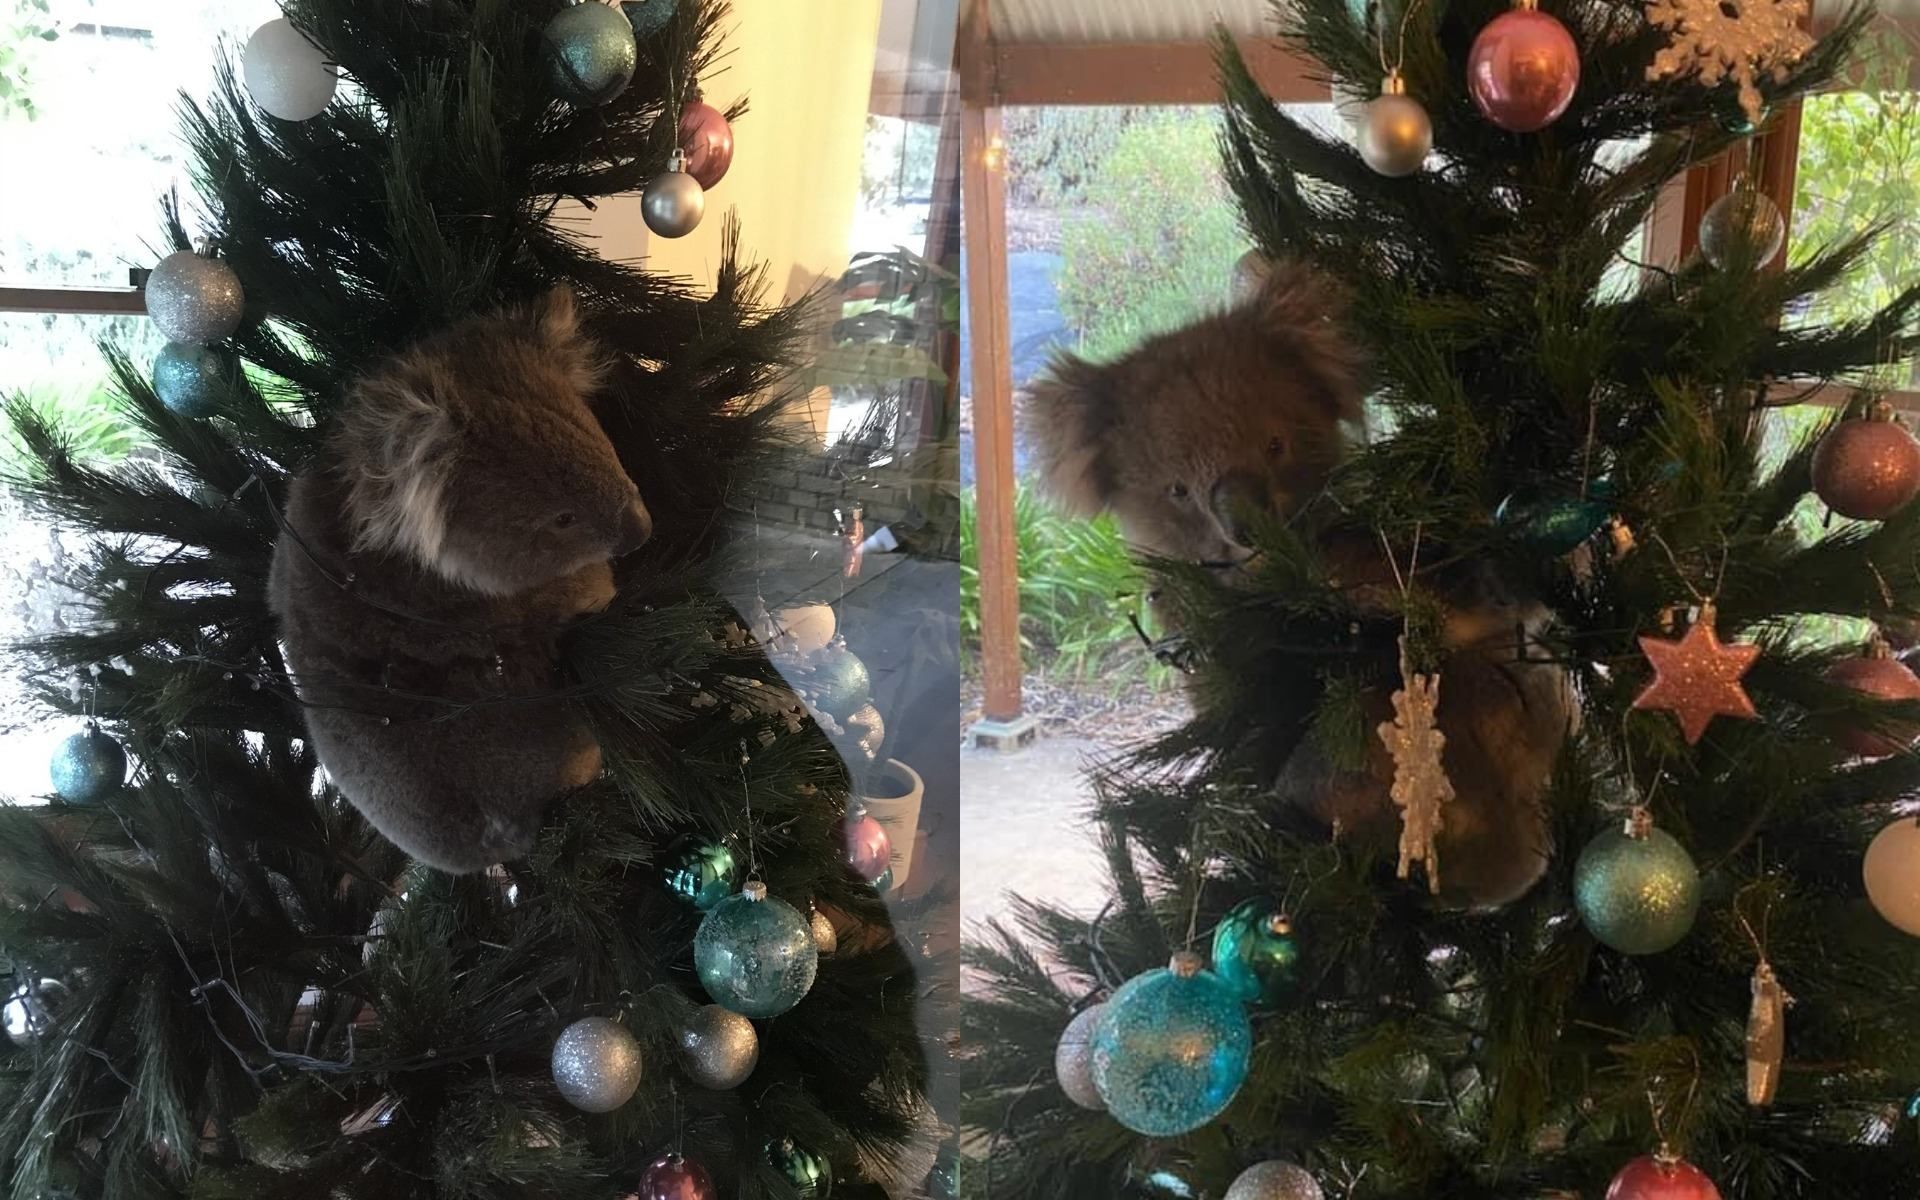 Санта в шортах, питоны и коалы  на елке: как празднуют Рождество в Австралии - фото
